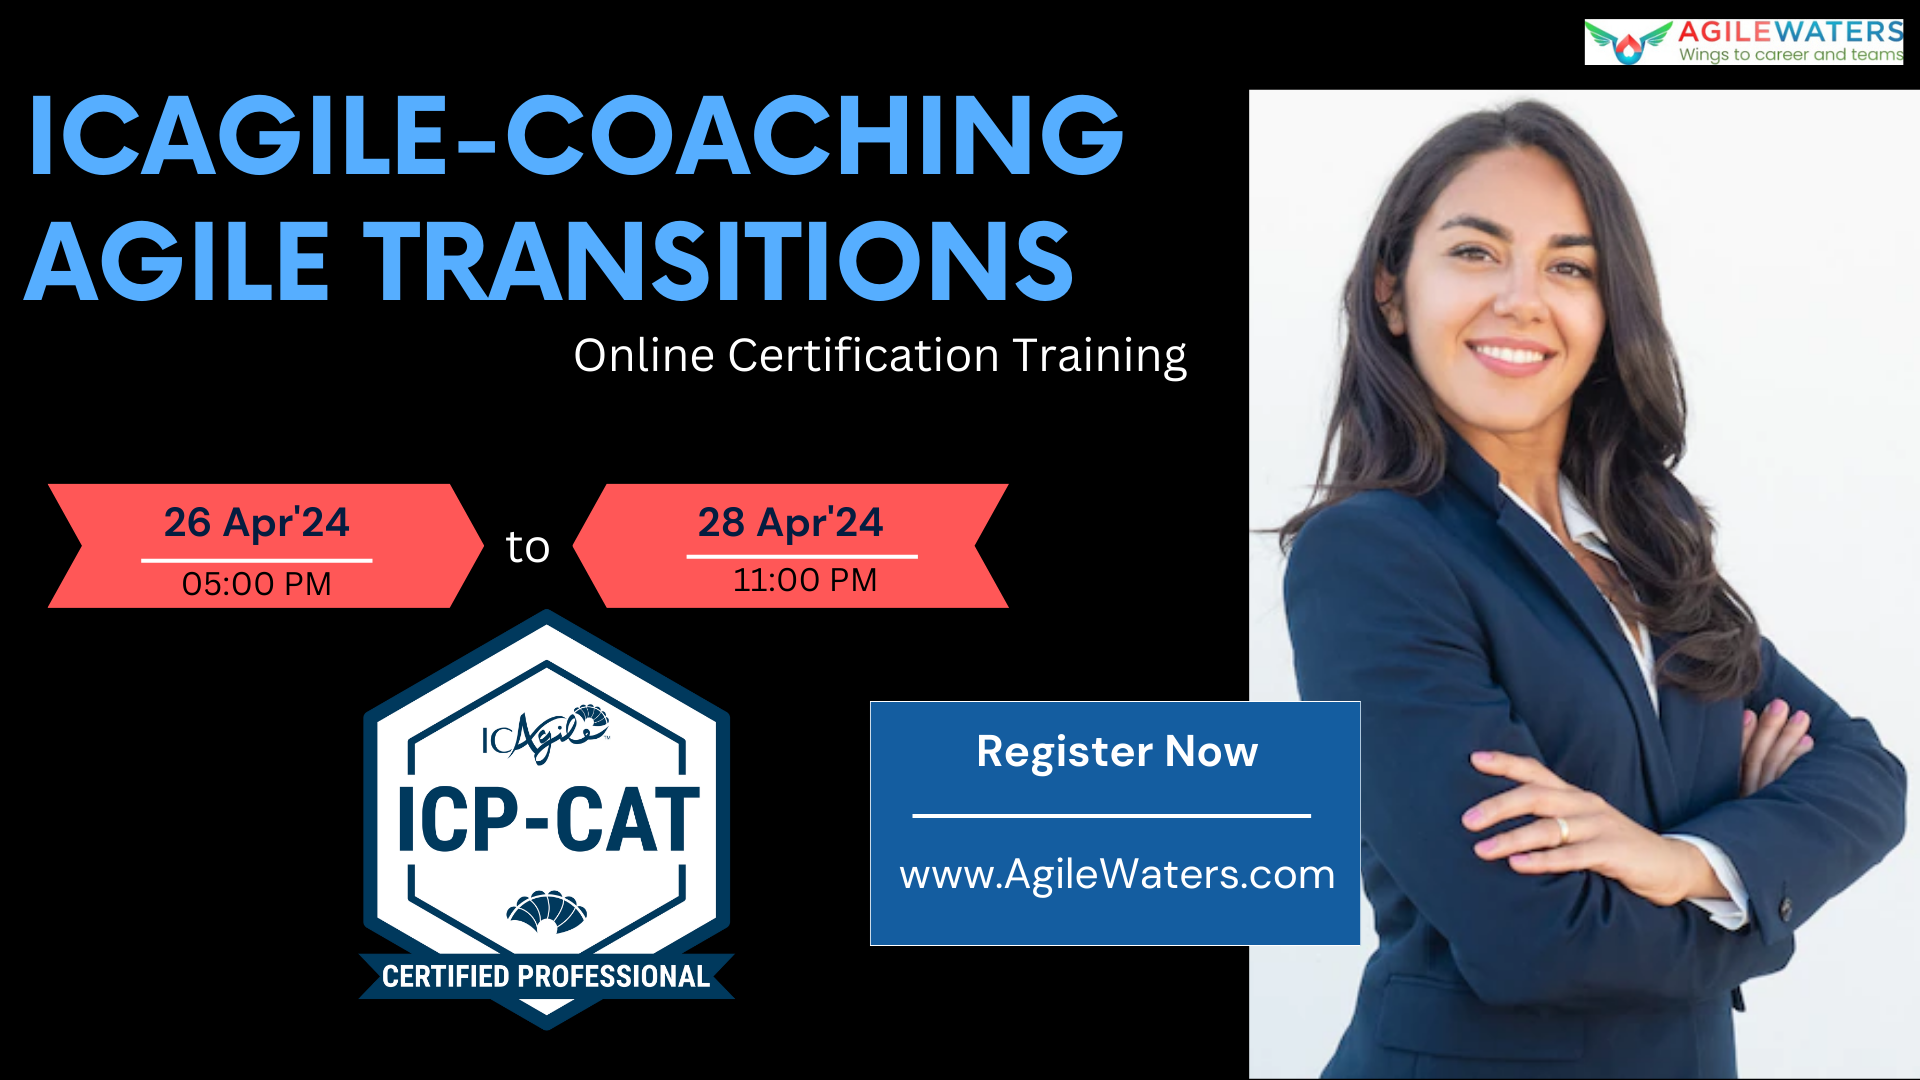 ICP-CAT Training, Online Event